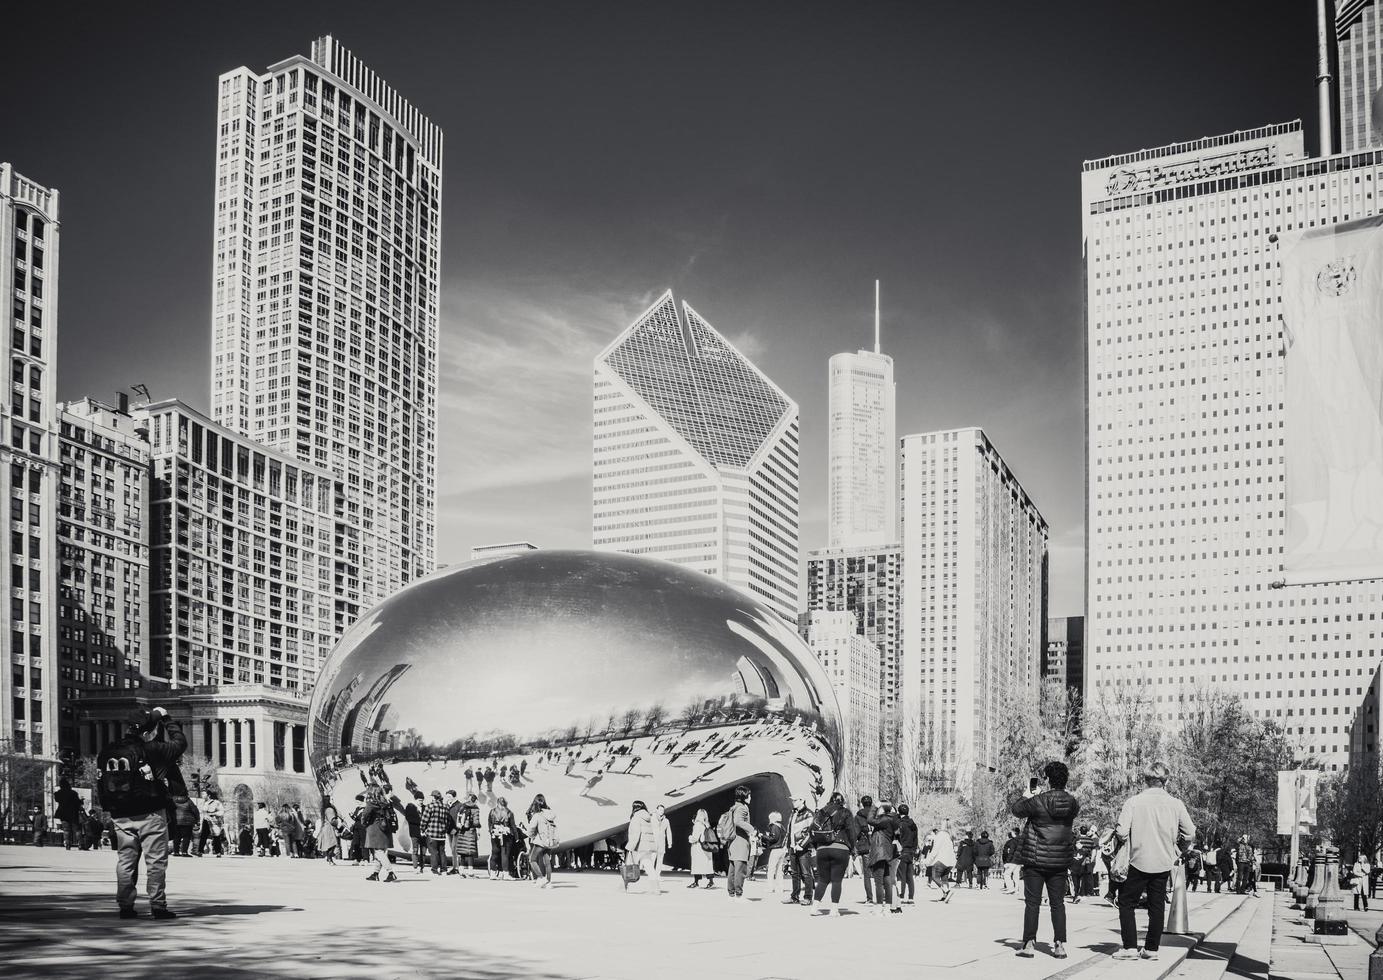 marcha 4 2023. Chicago, illinois. a feijão é uma trabalhos do público arte dentro a coração do Chicago. a escultura, que é intitulado nuvem portão, é 1 do a os mundos maior permanente ao ar livre arte instalações. foto